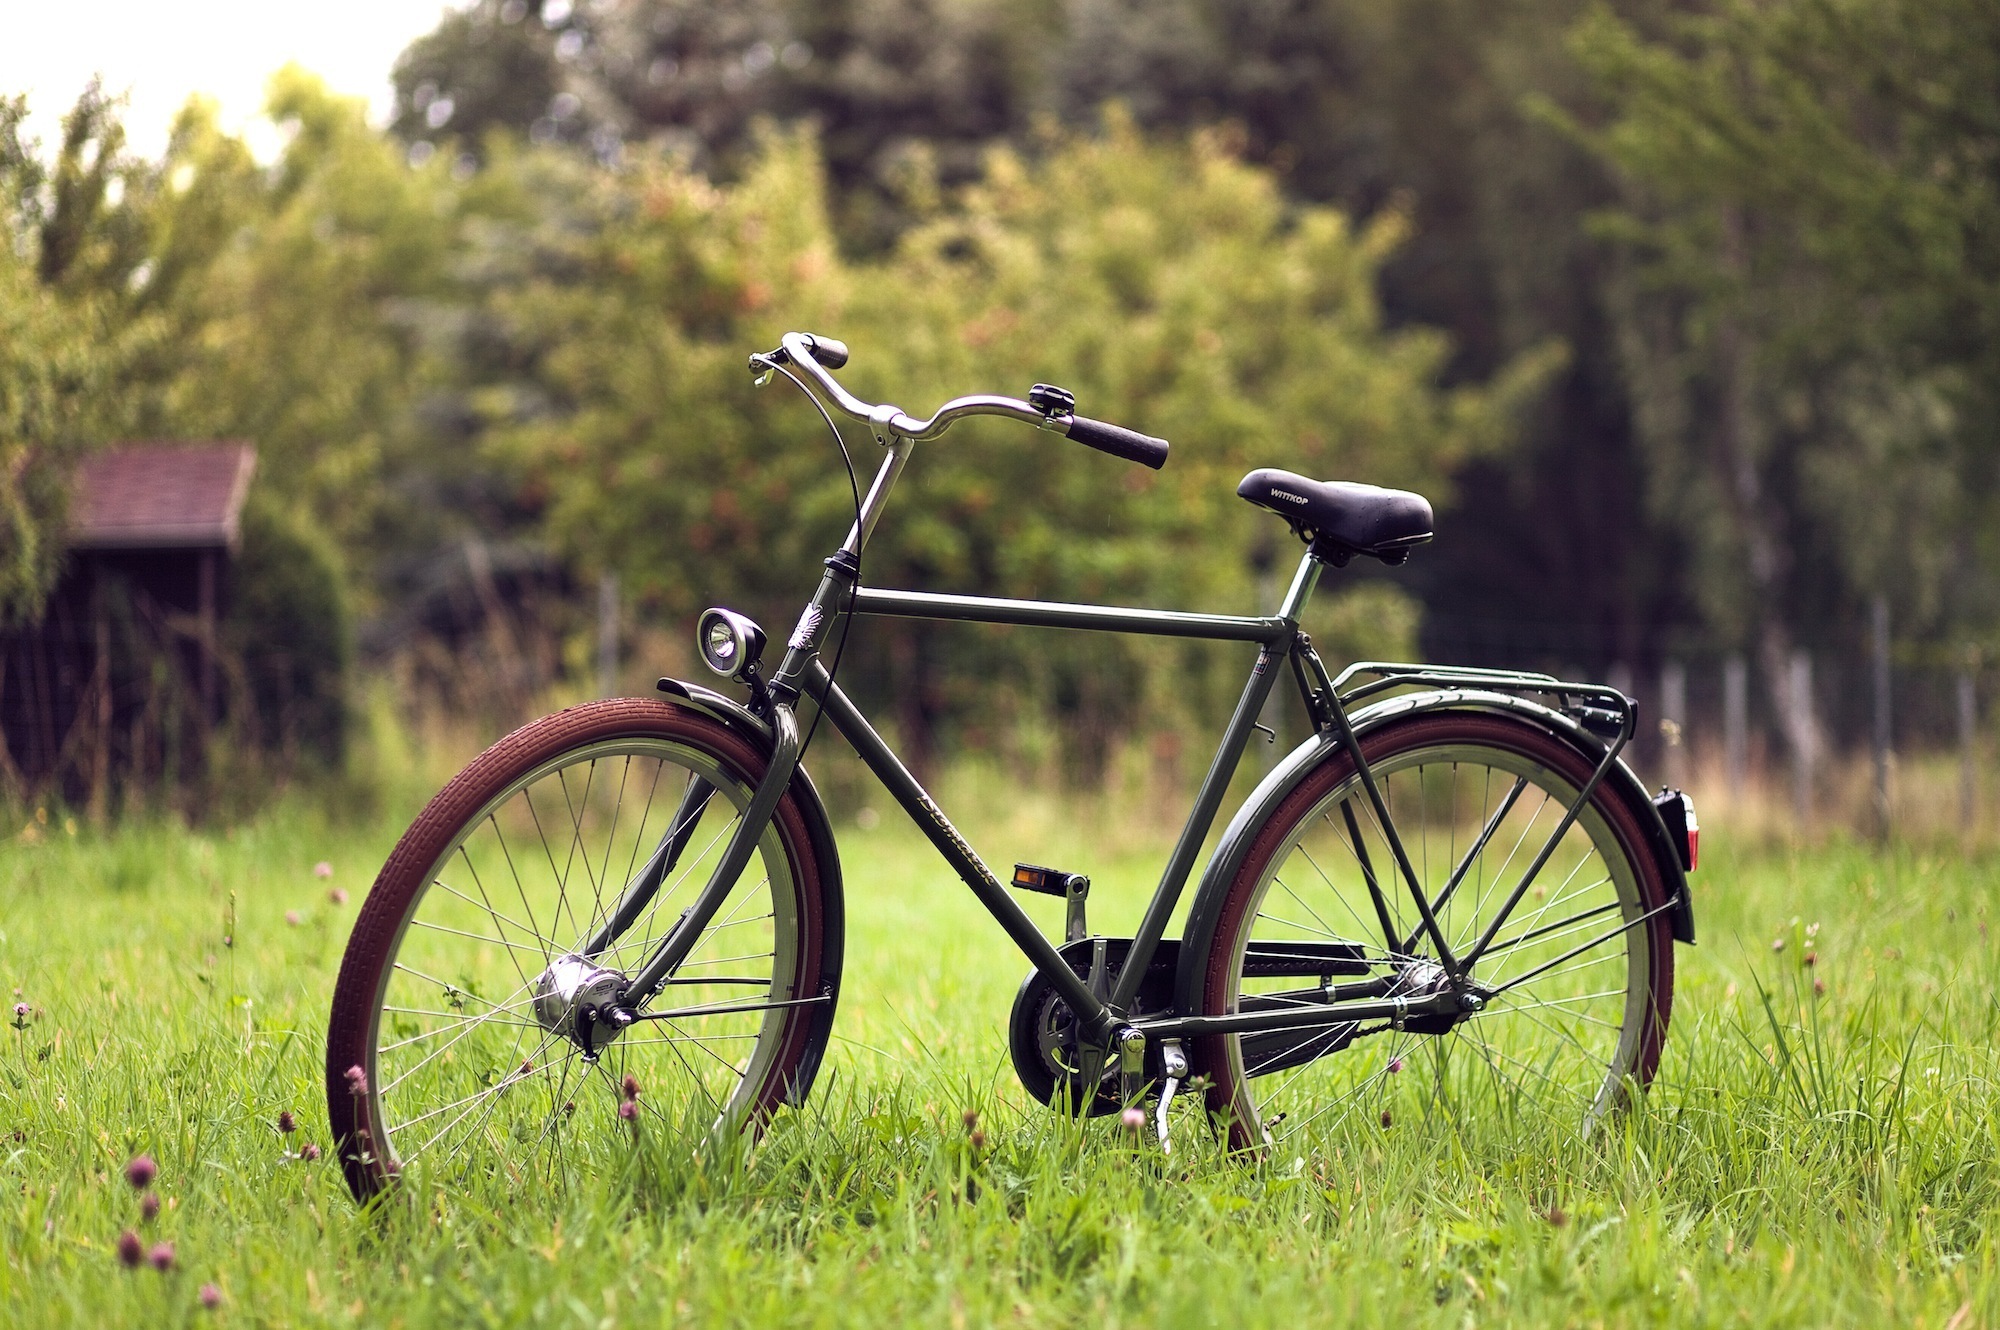 Картинка велосипед. Красивые велосипеды. Валосемид. Красивые дорожные велосипеды. Велосипед красиво.